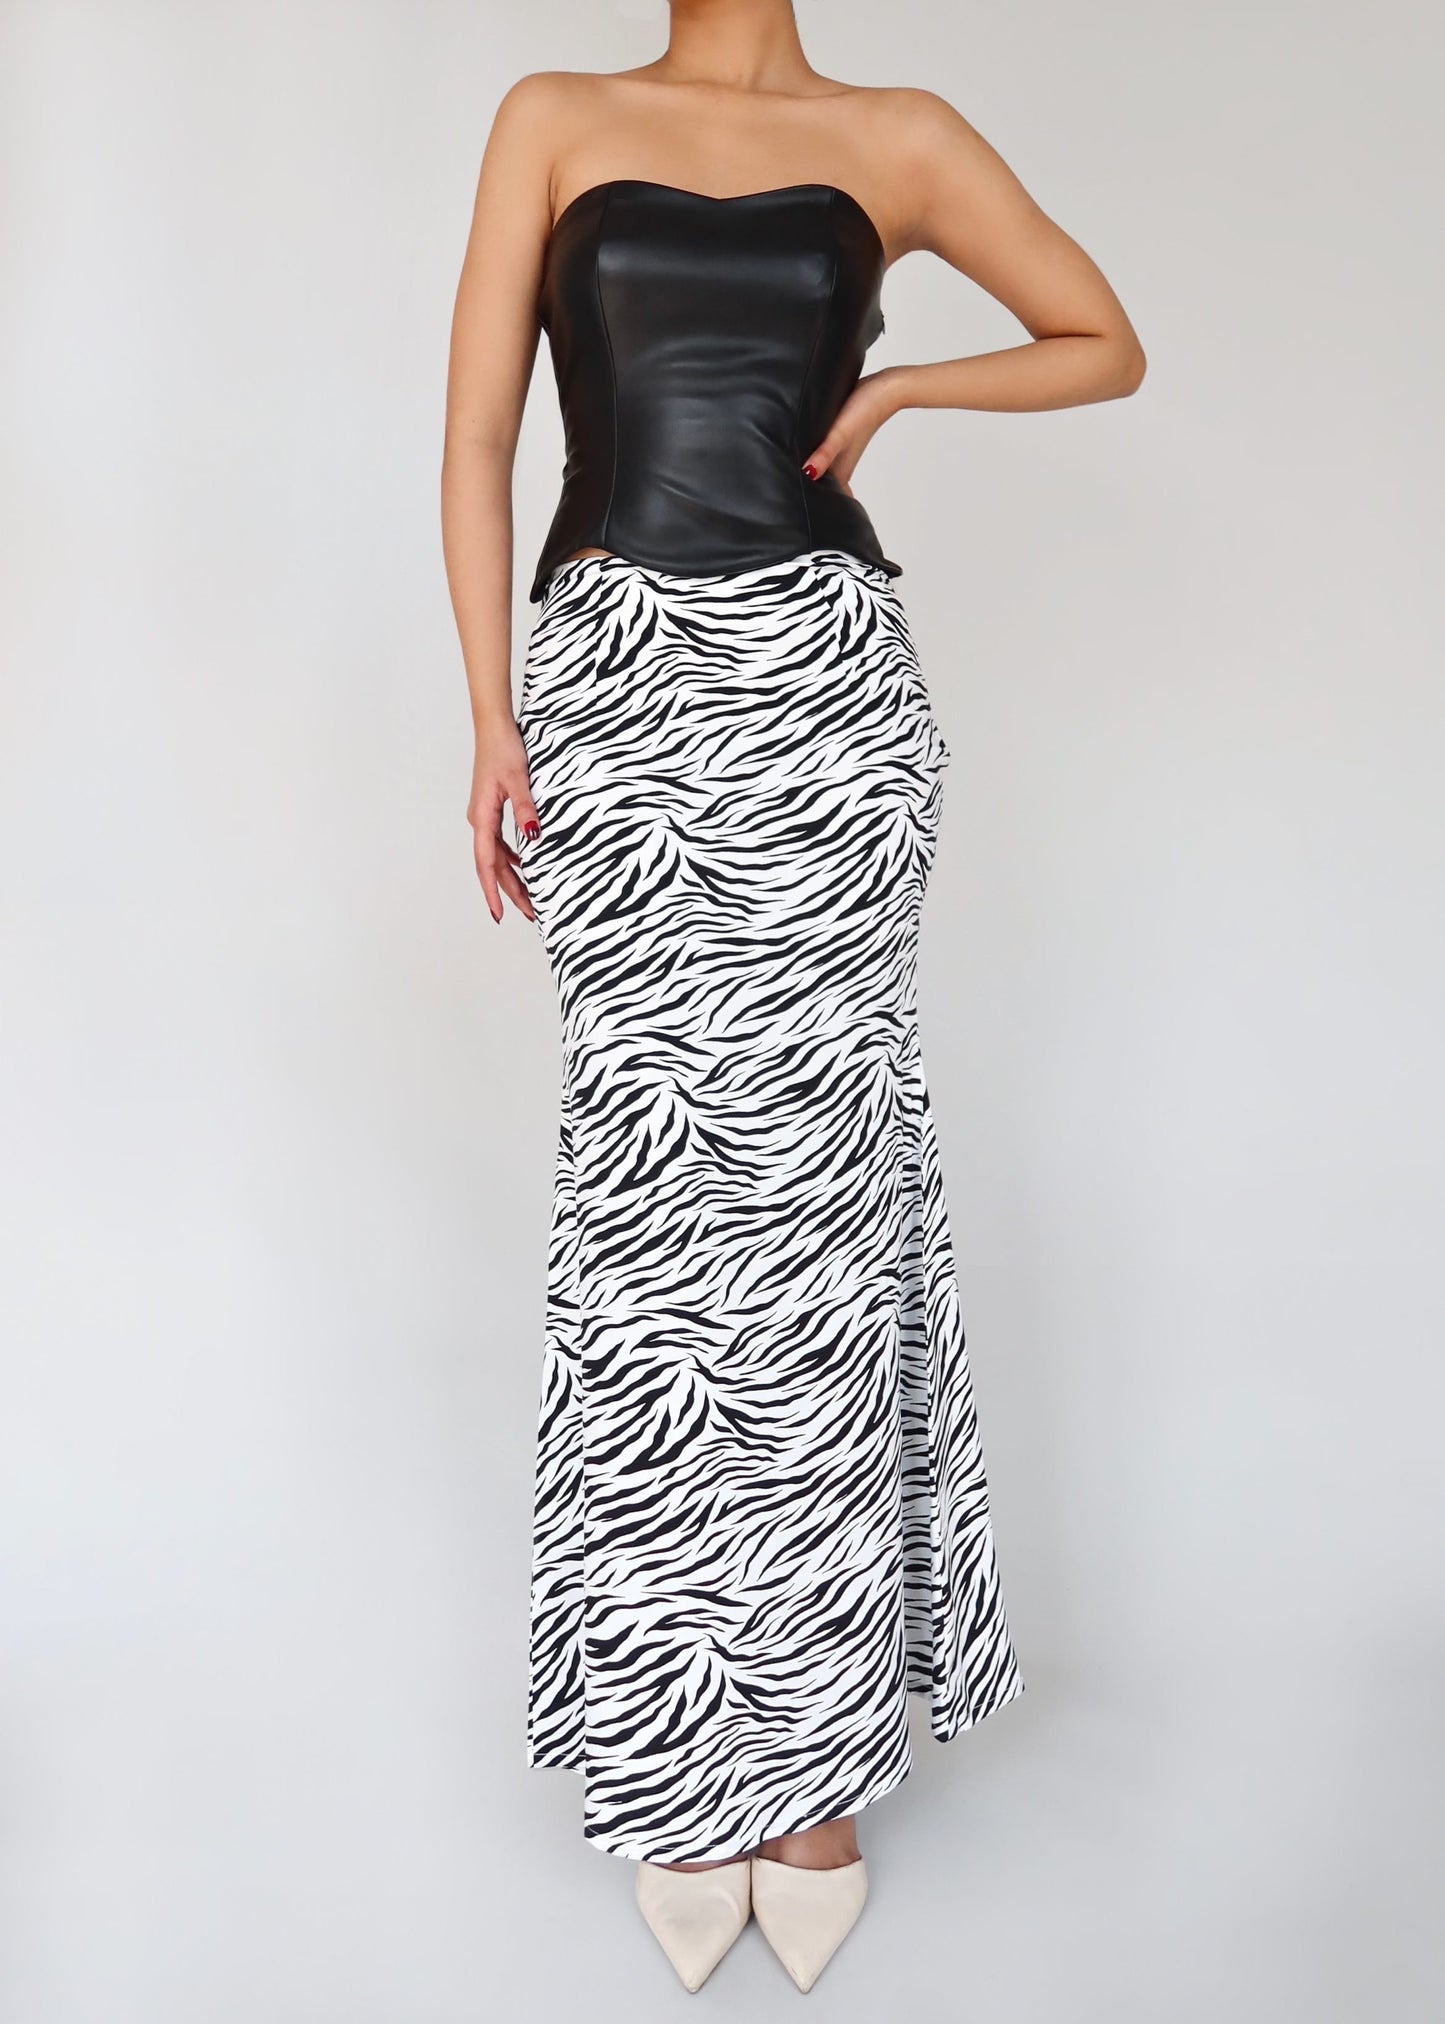 Zebra Print Long Skirt